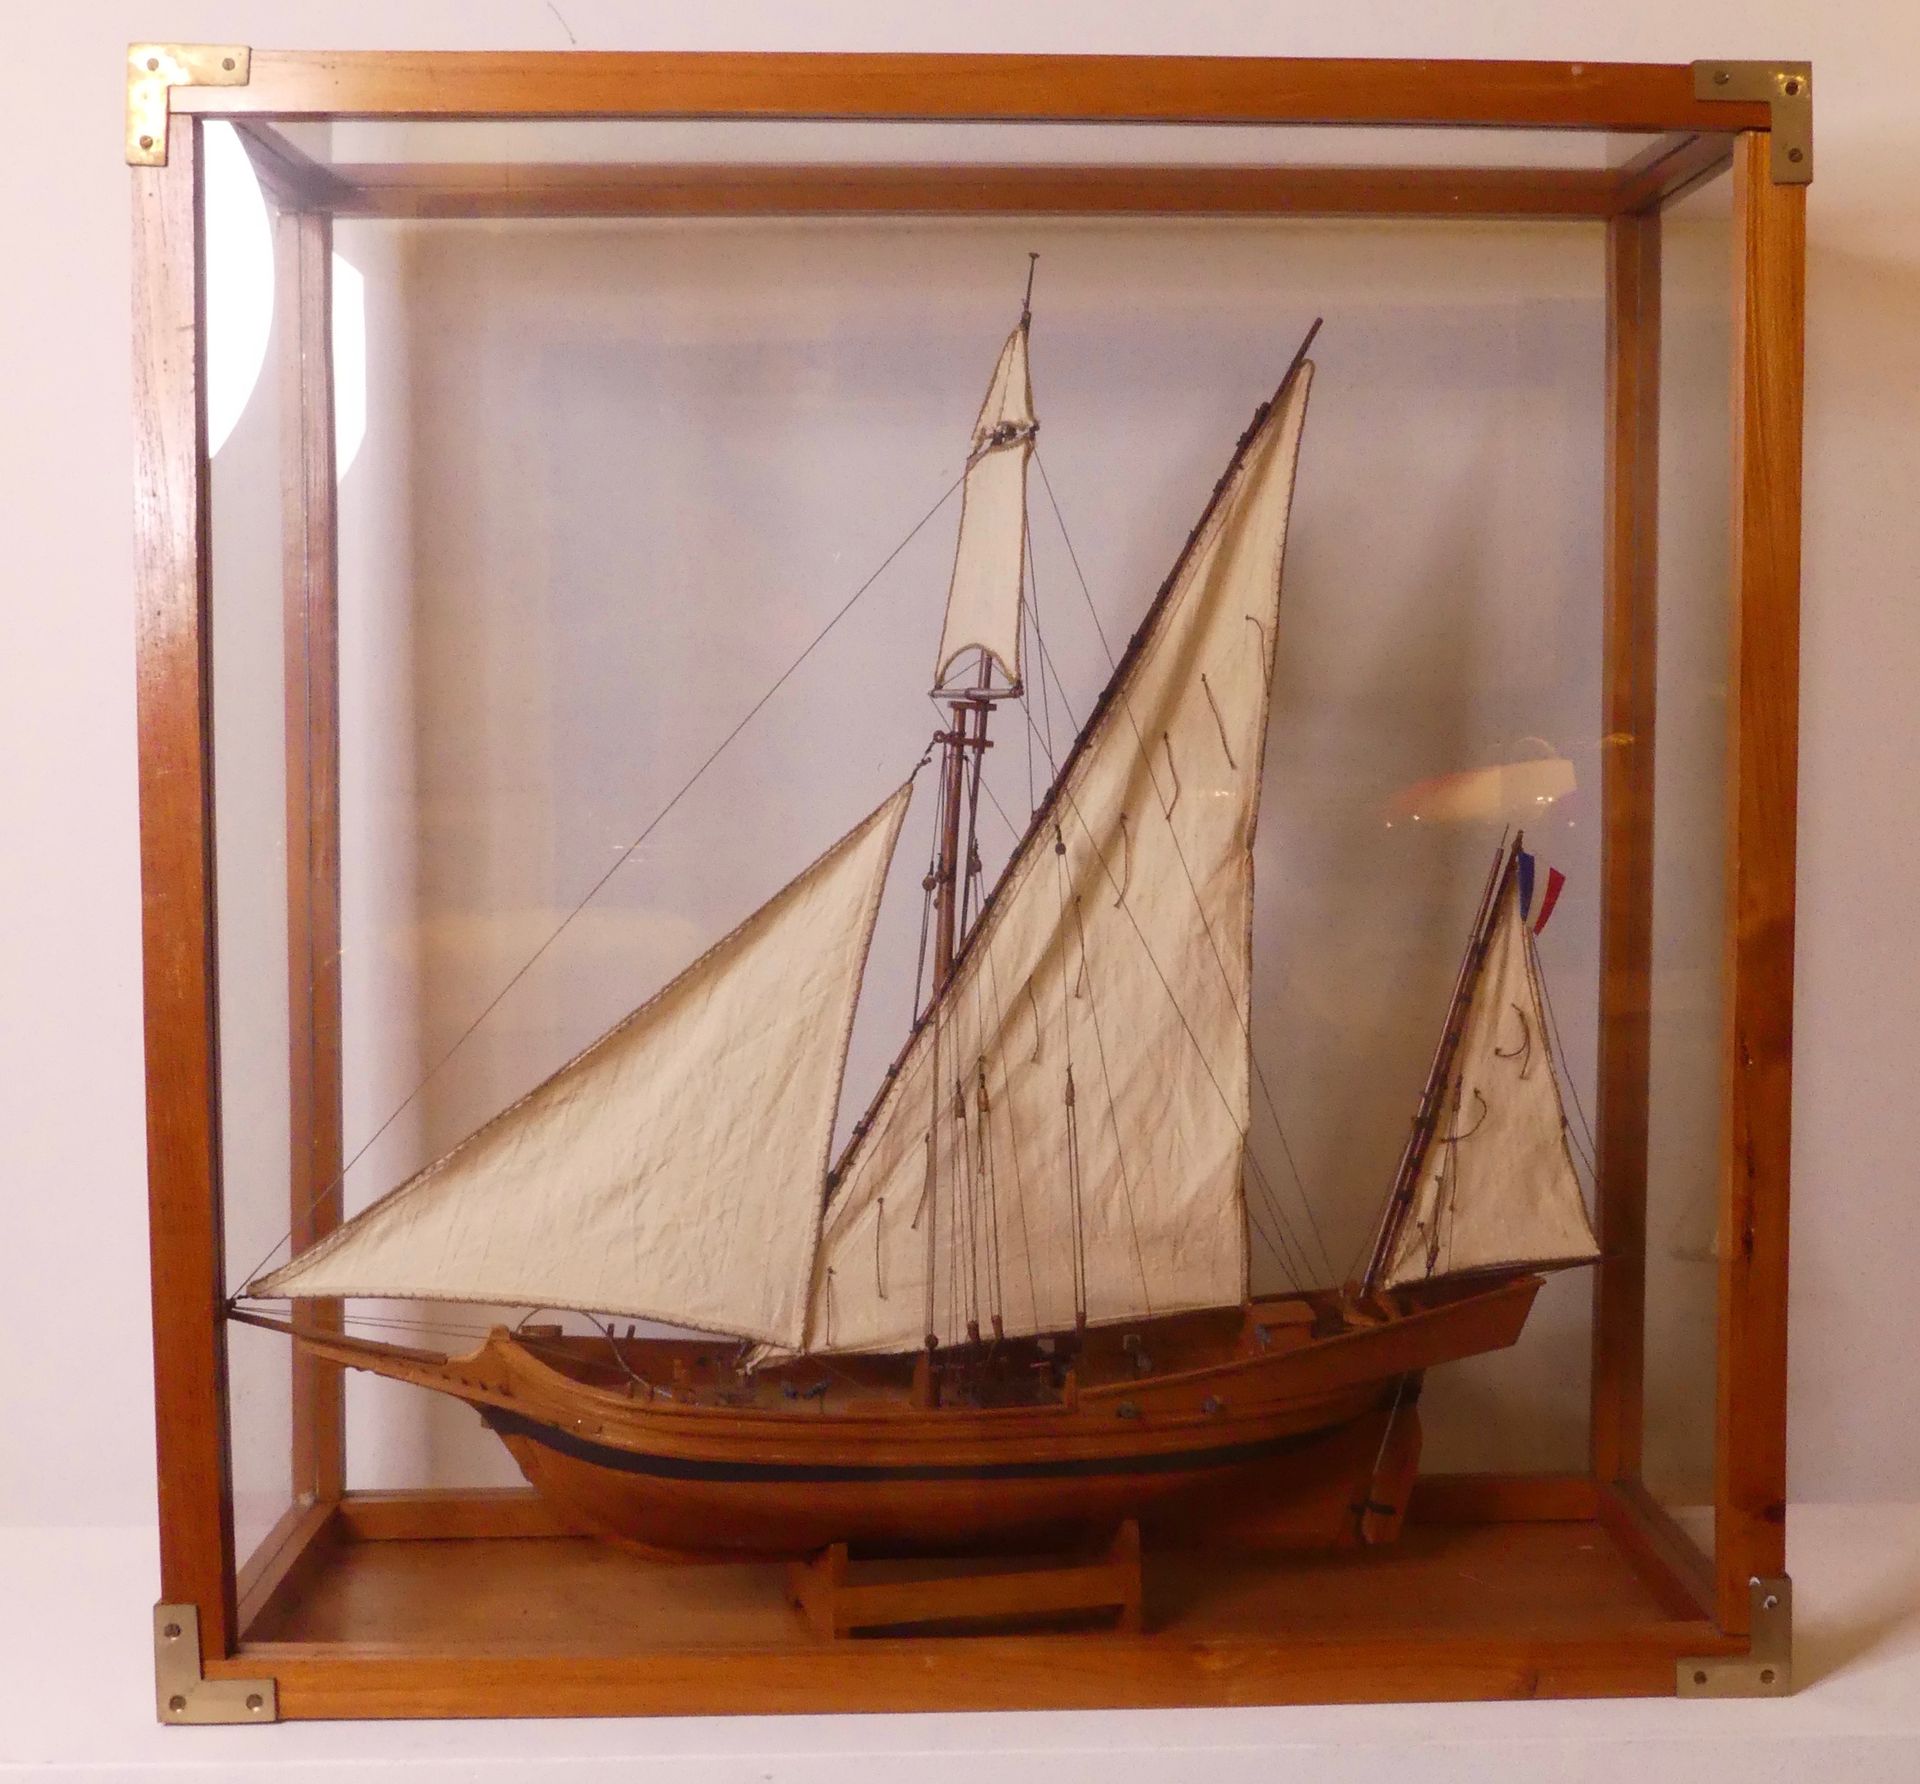 Null Modell eines Lateinersegelschiffes aus Holz, in einer Vitrine (72x72)